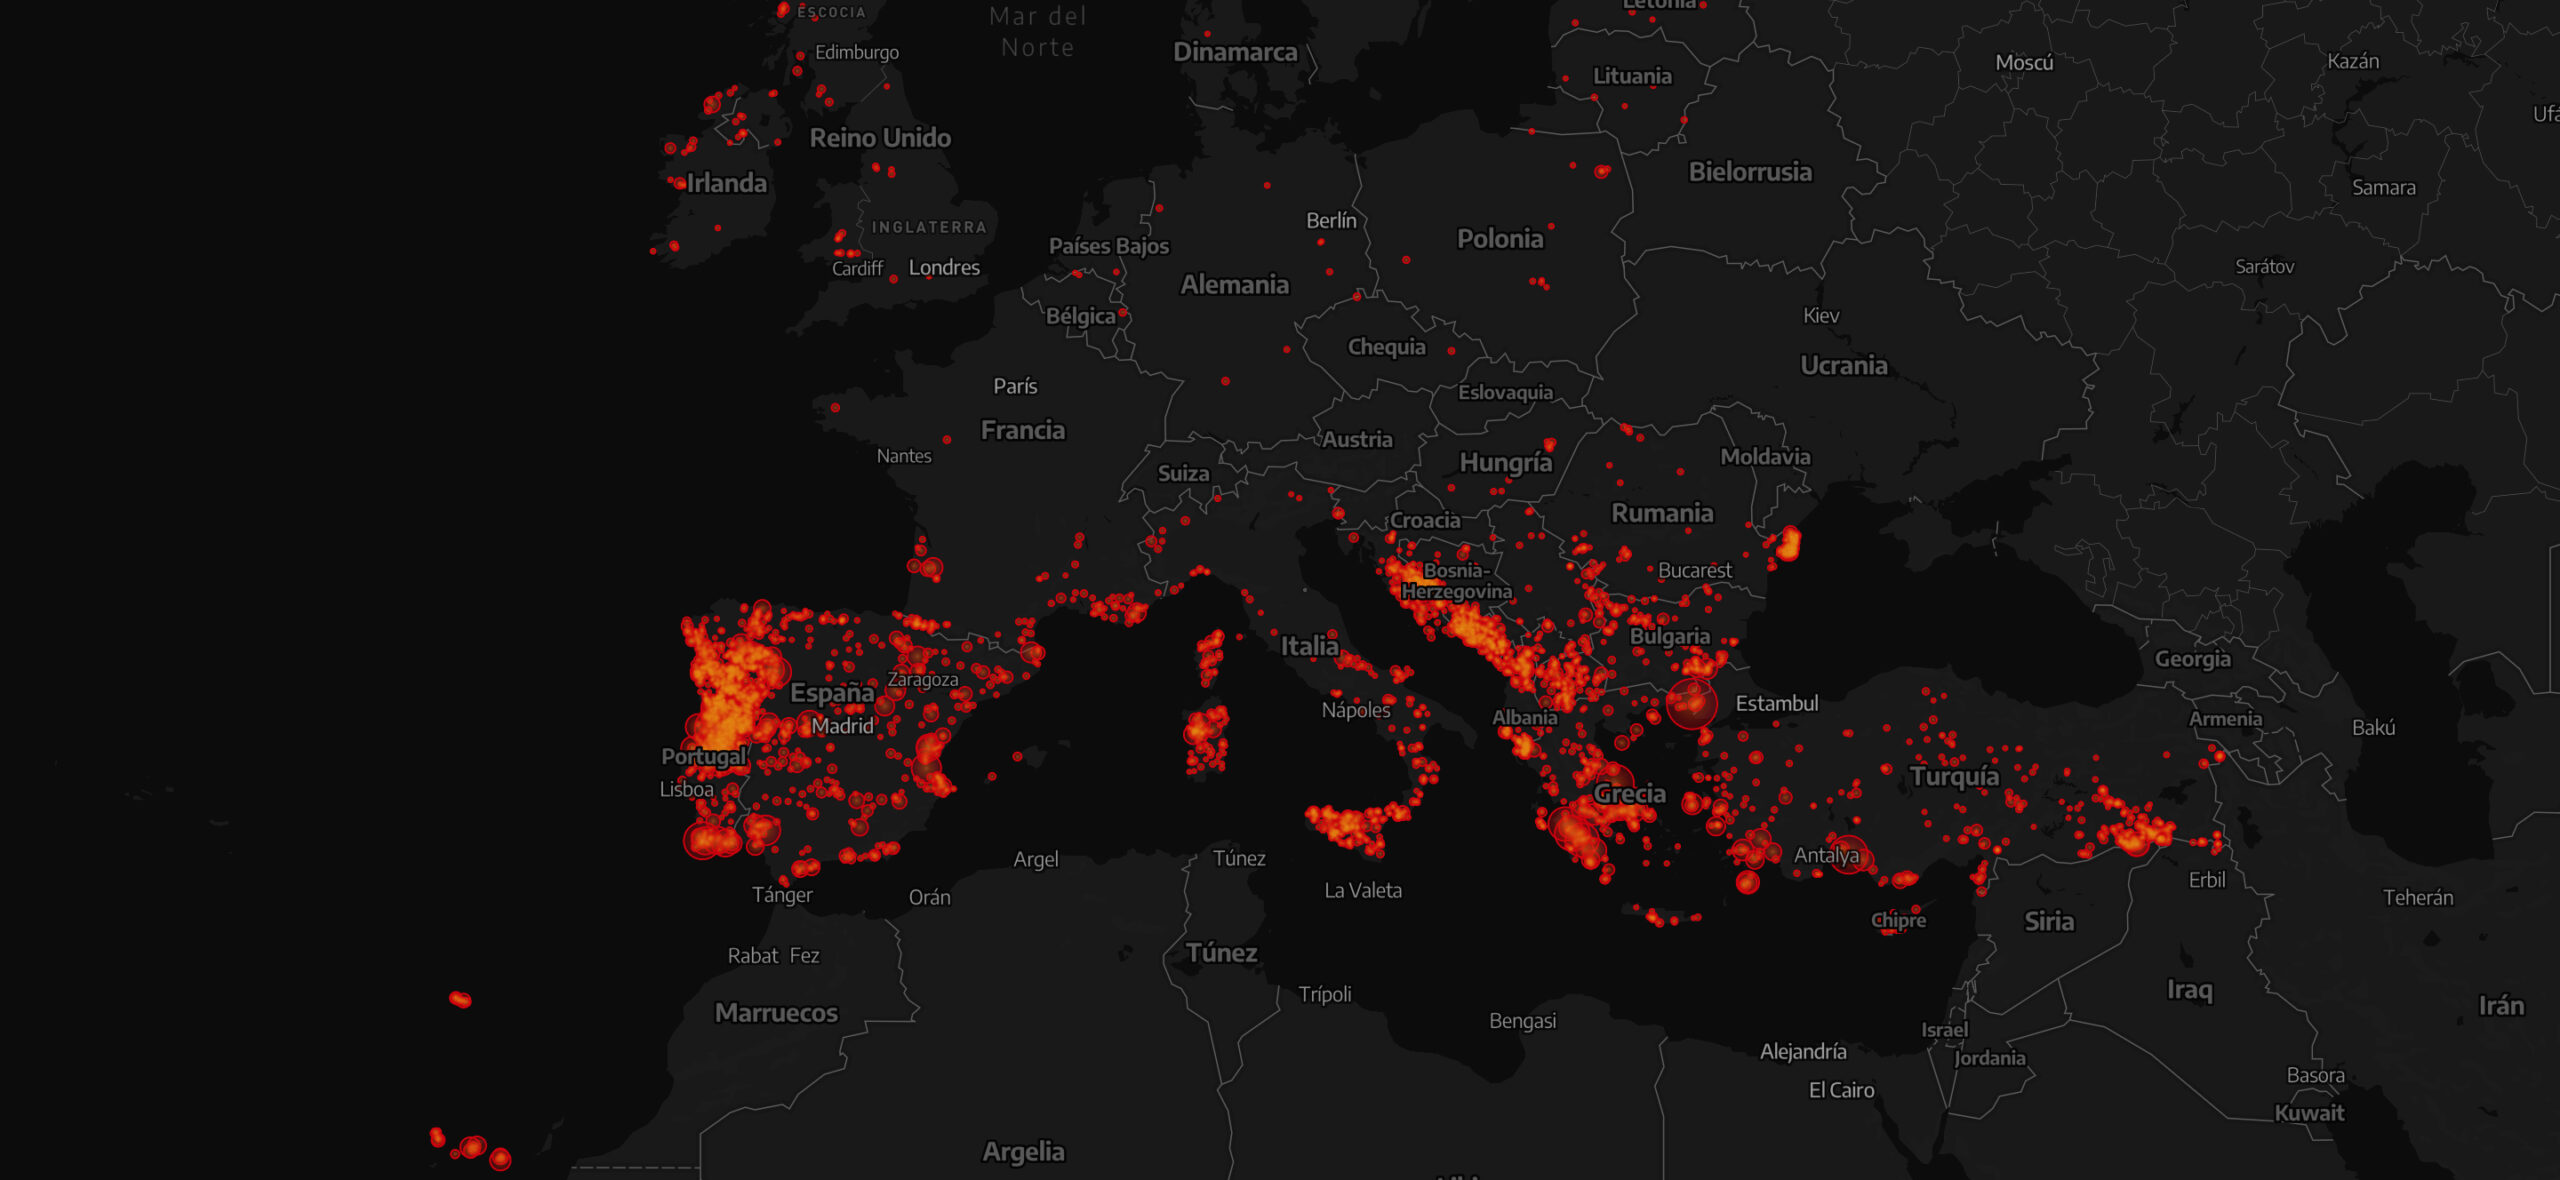 Os mega-fogos estão a queimar a Europa. Estamos preparados?